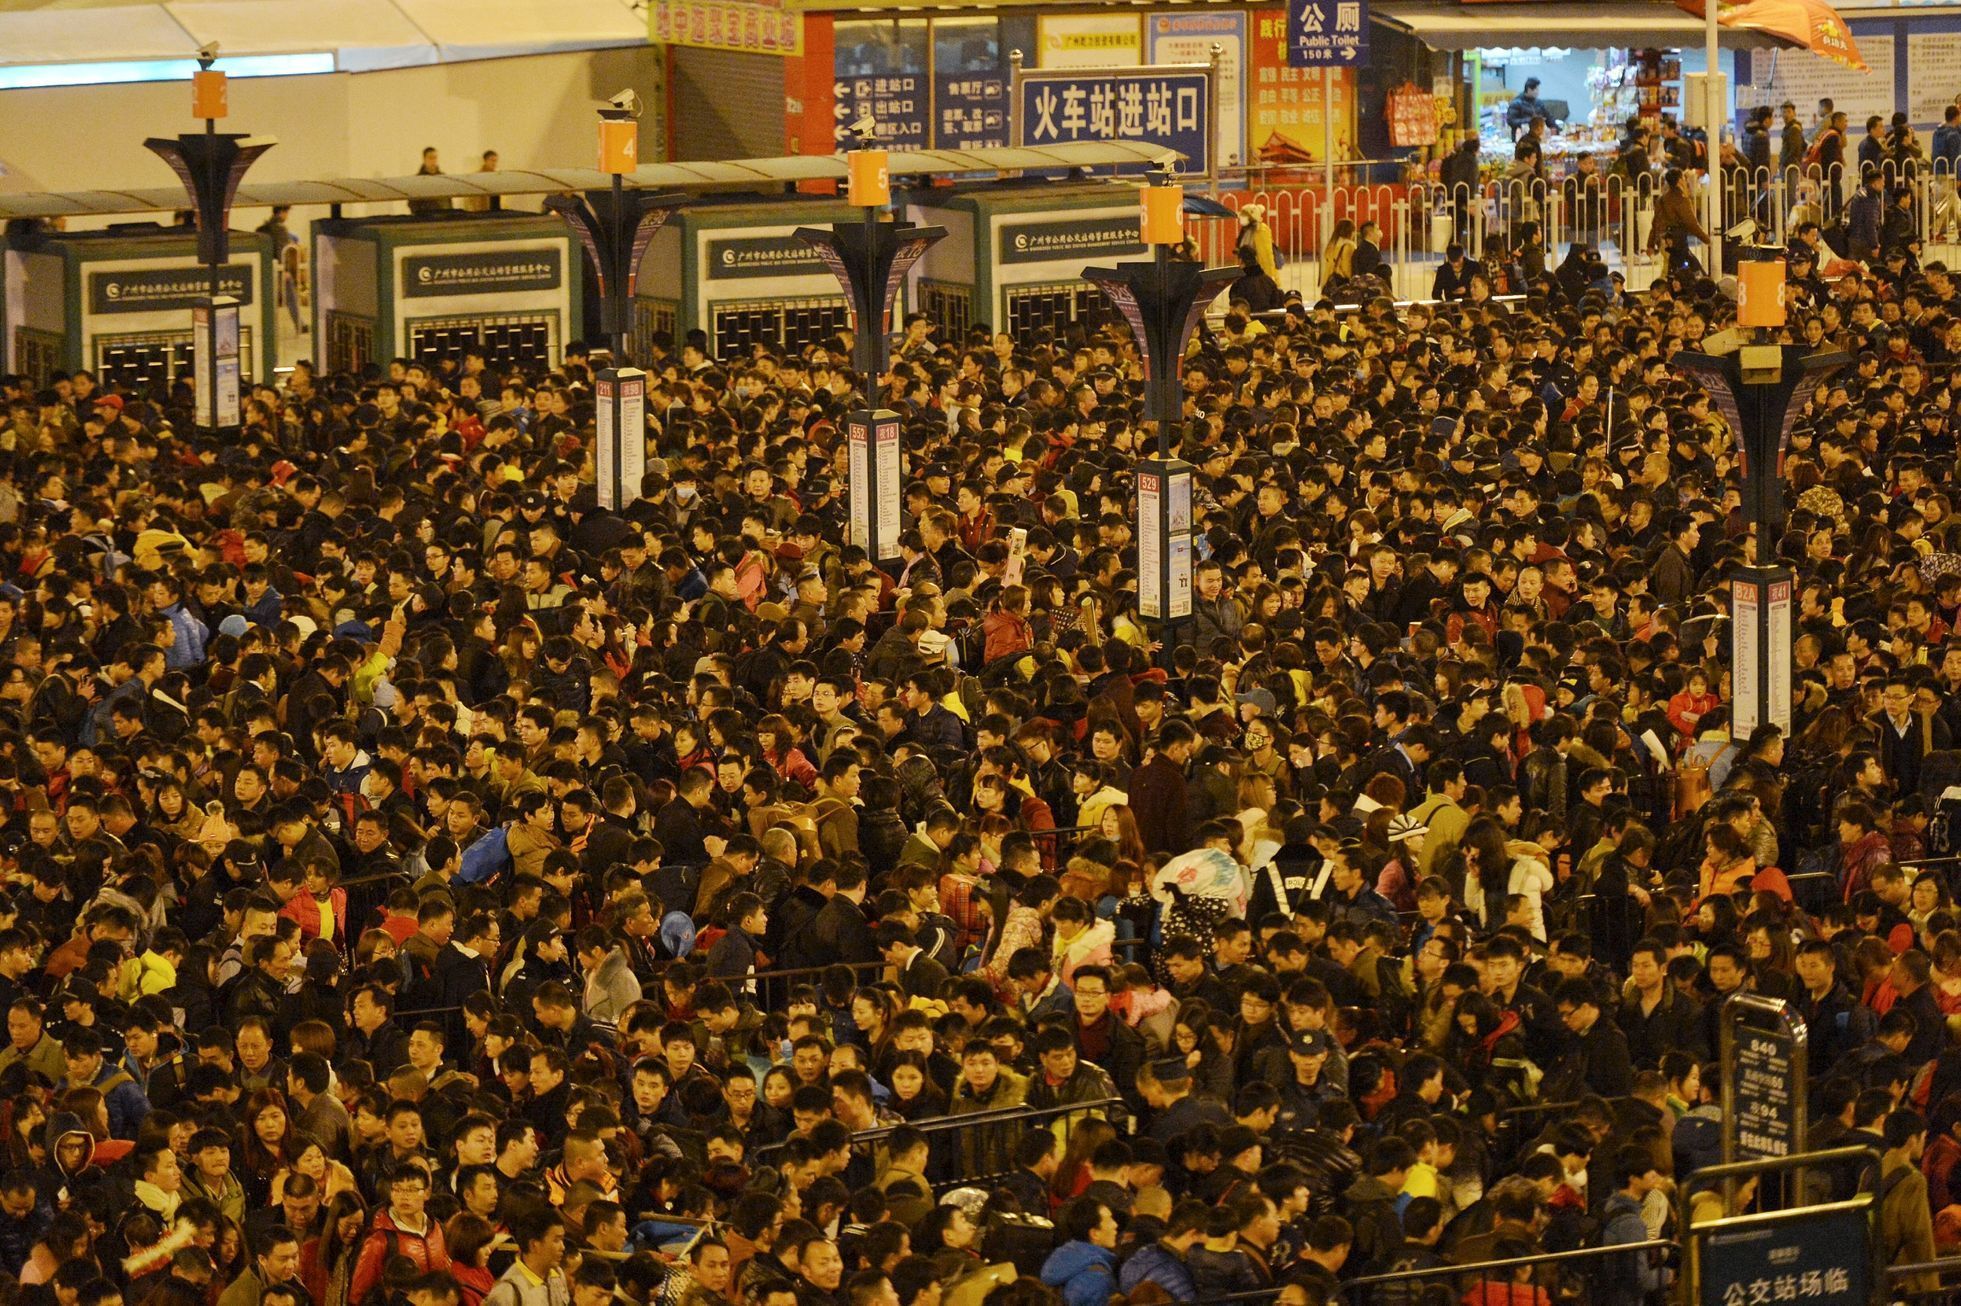 Davy lidí na nádraží v Chang-čou na východě Číny.